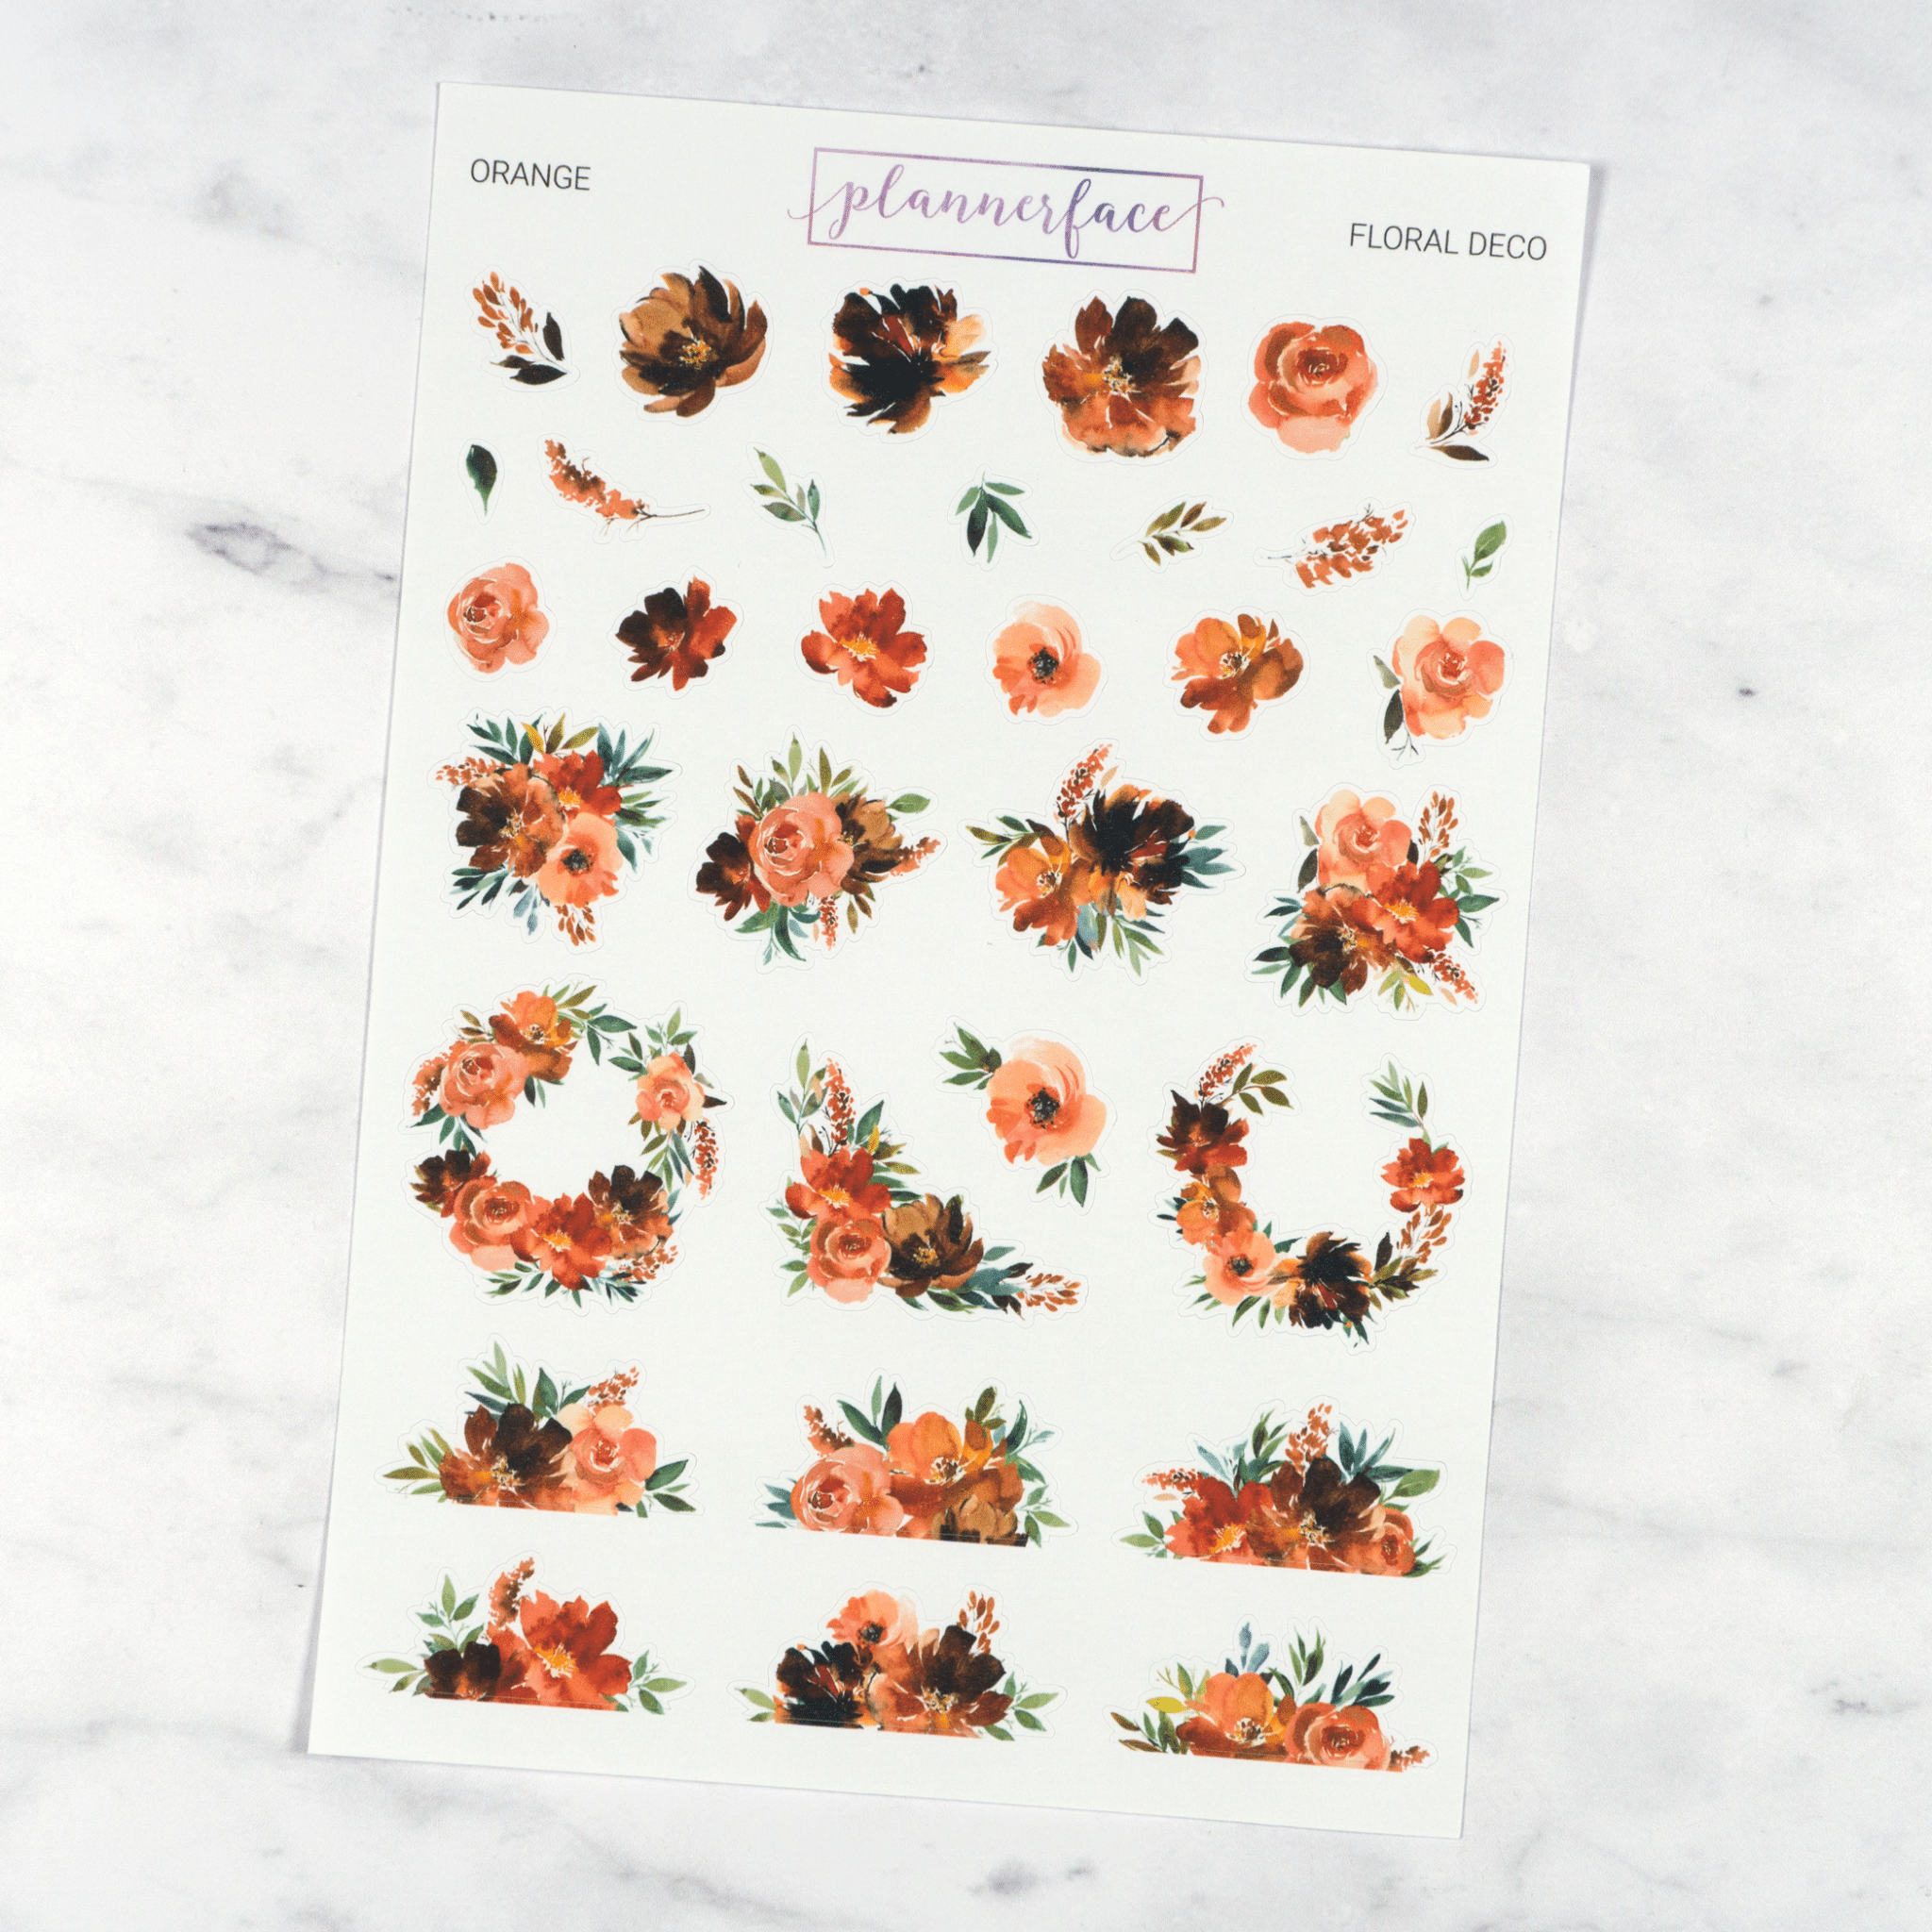 Orange Floral Deco | Multicolour by Plannerface